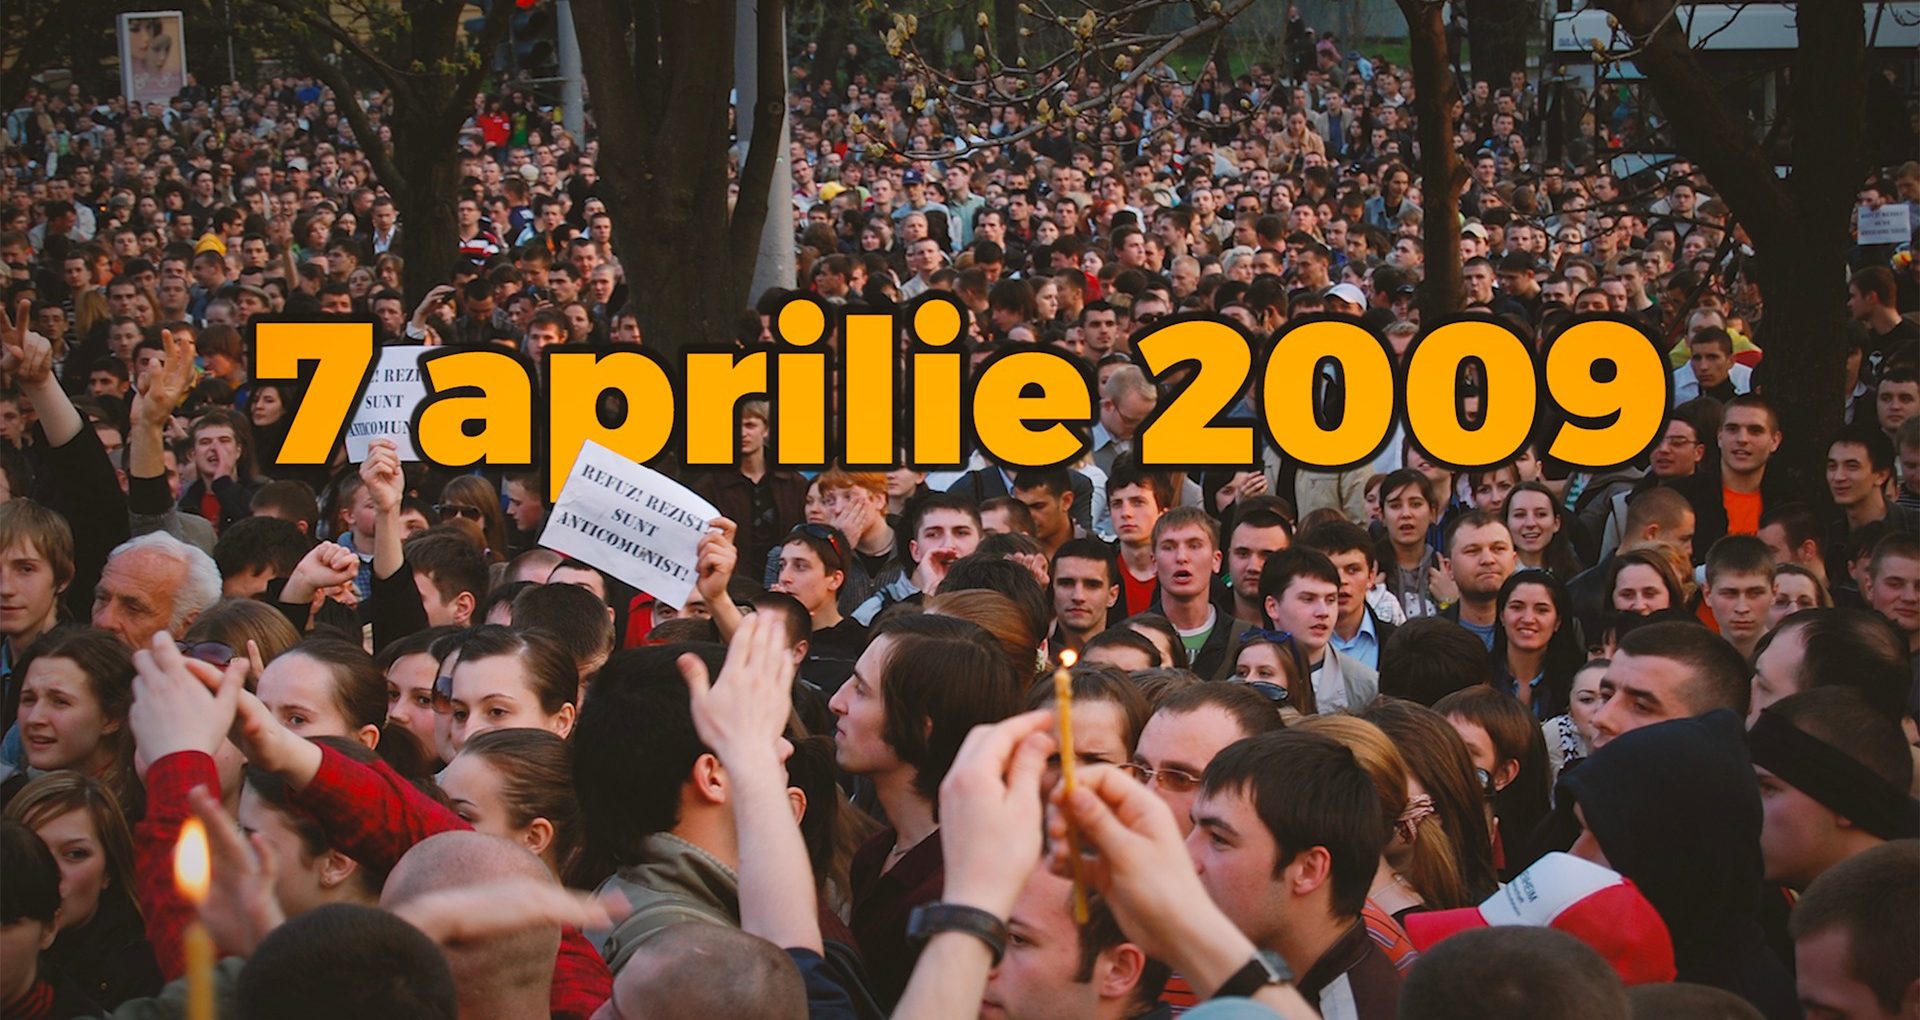 VIDEO/ Când își vor face loc în manualele școlare protestele din 7 aprilie 2009? Profesori de istorie estimează că am putea vorbi obiectiv despre „Revoluția Twitter” abia peste 50 de ani 